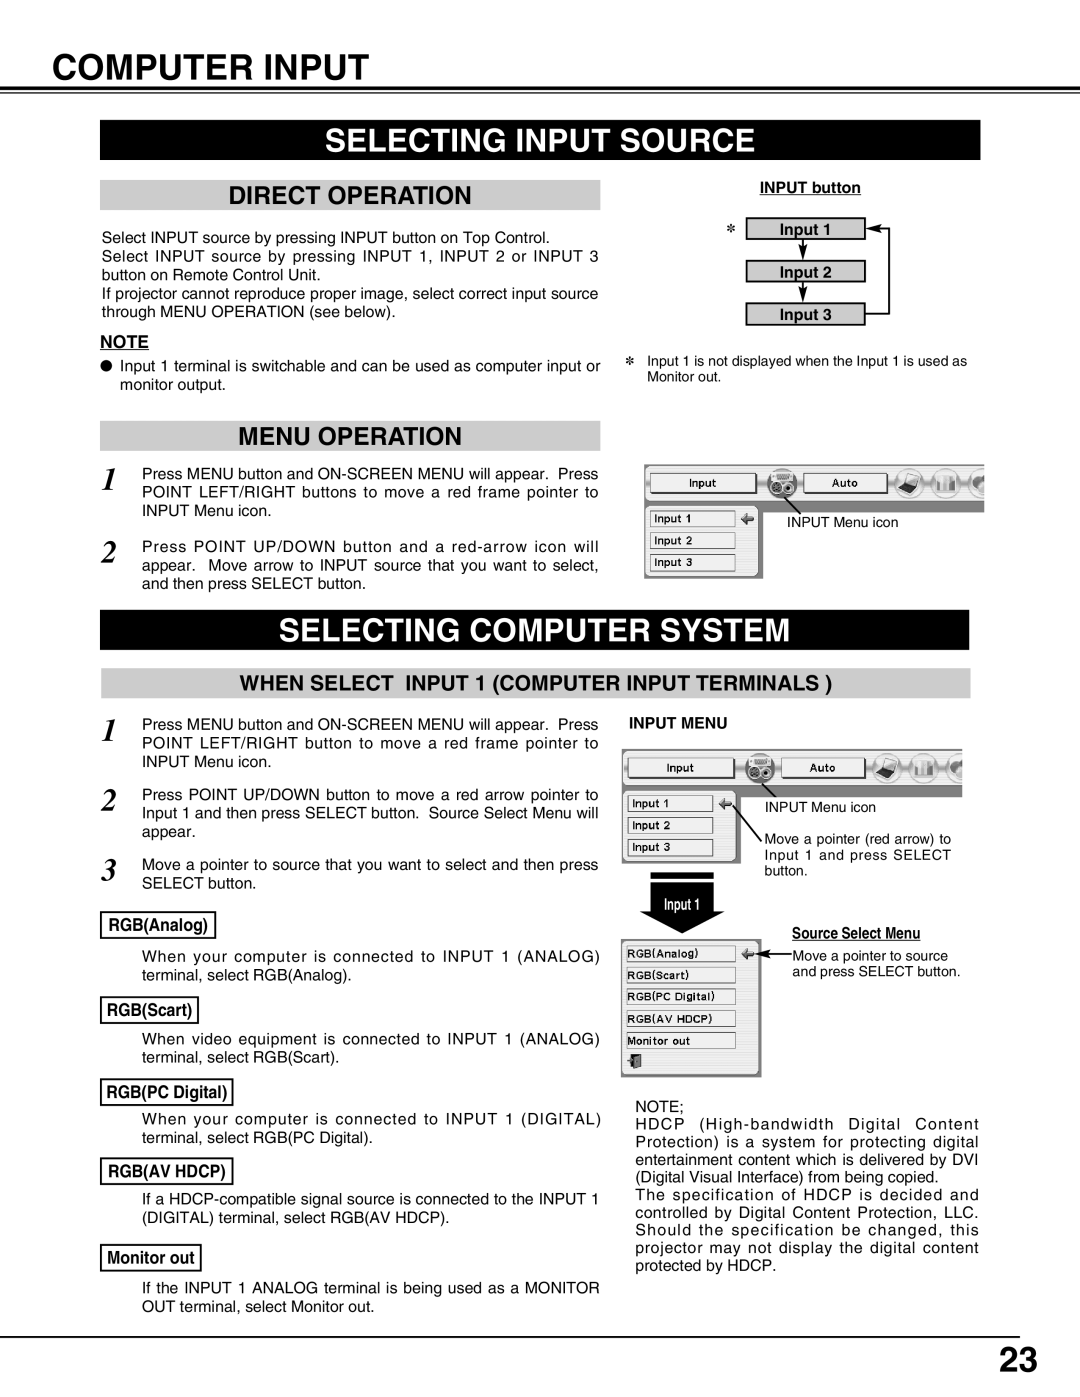 Sanyo PLC-XP55L owner manual Computer Input, Selecting Input Source, Selecting Computer System, INPUT button, Input Menu 